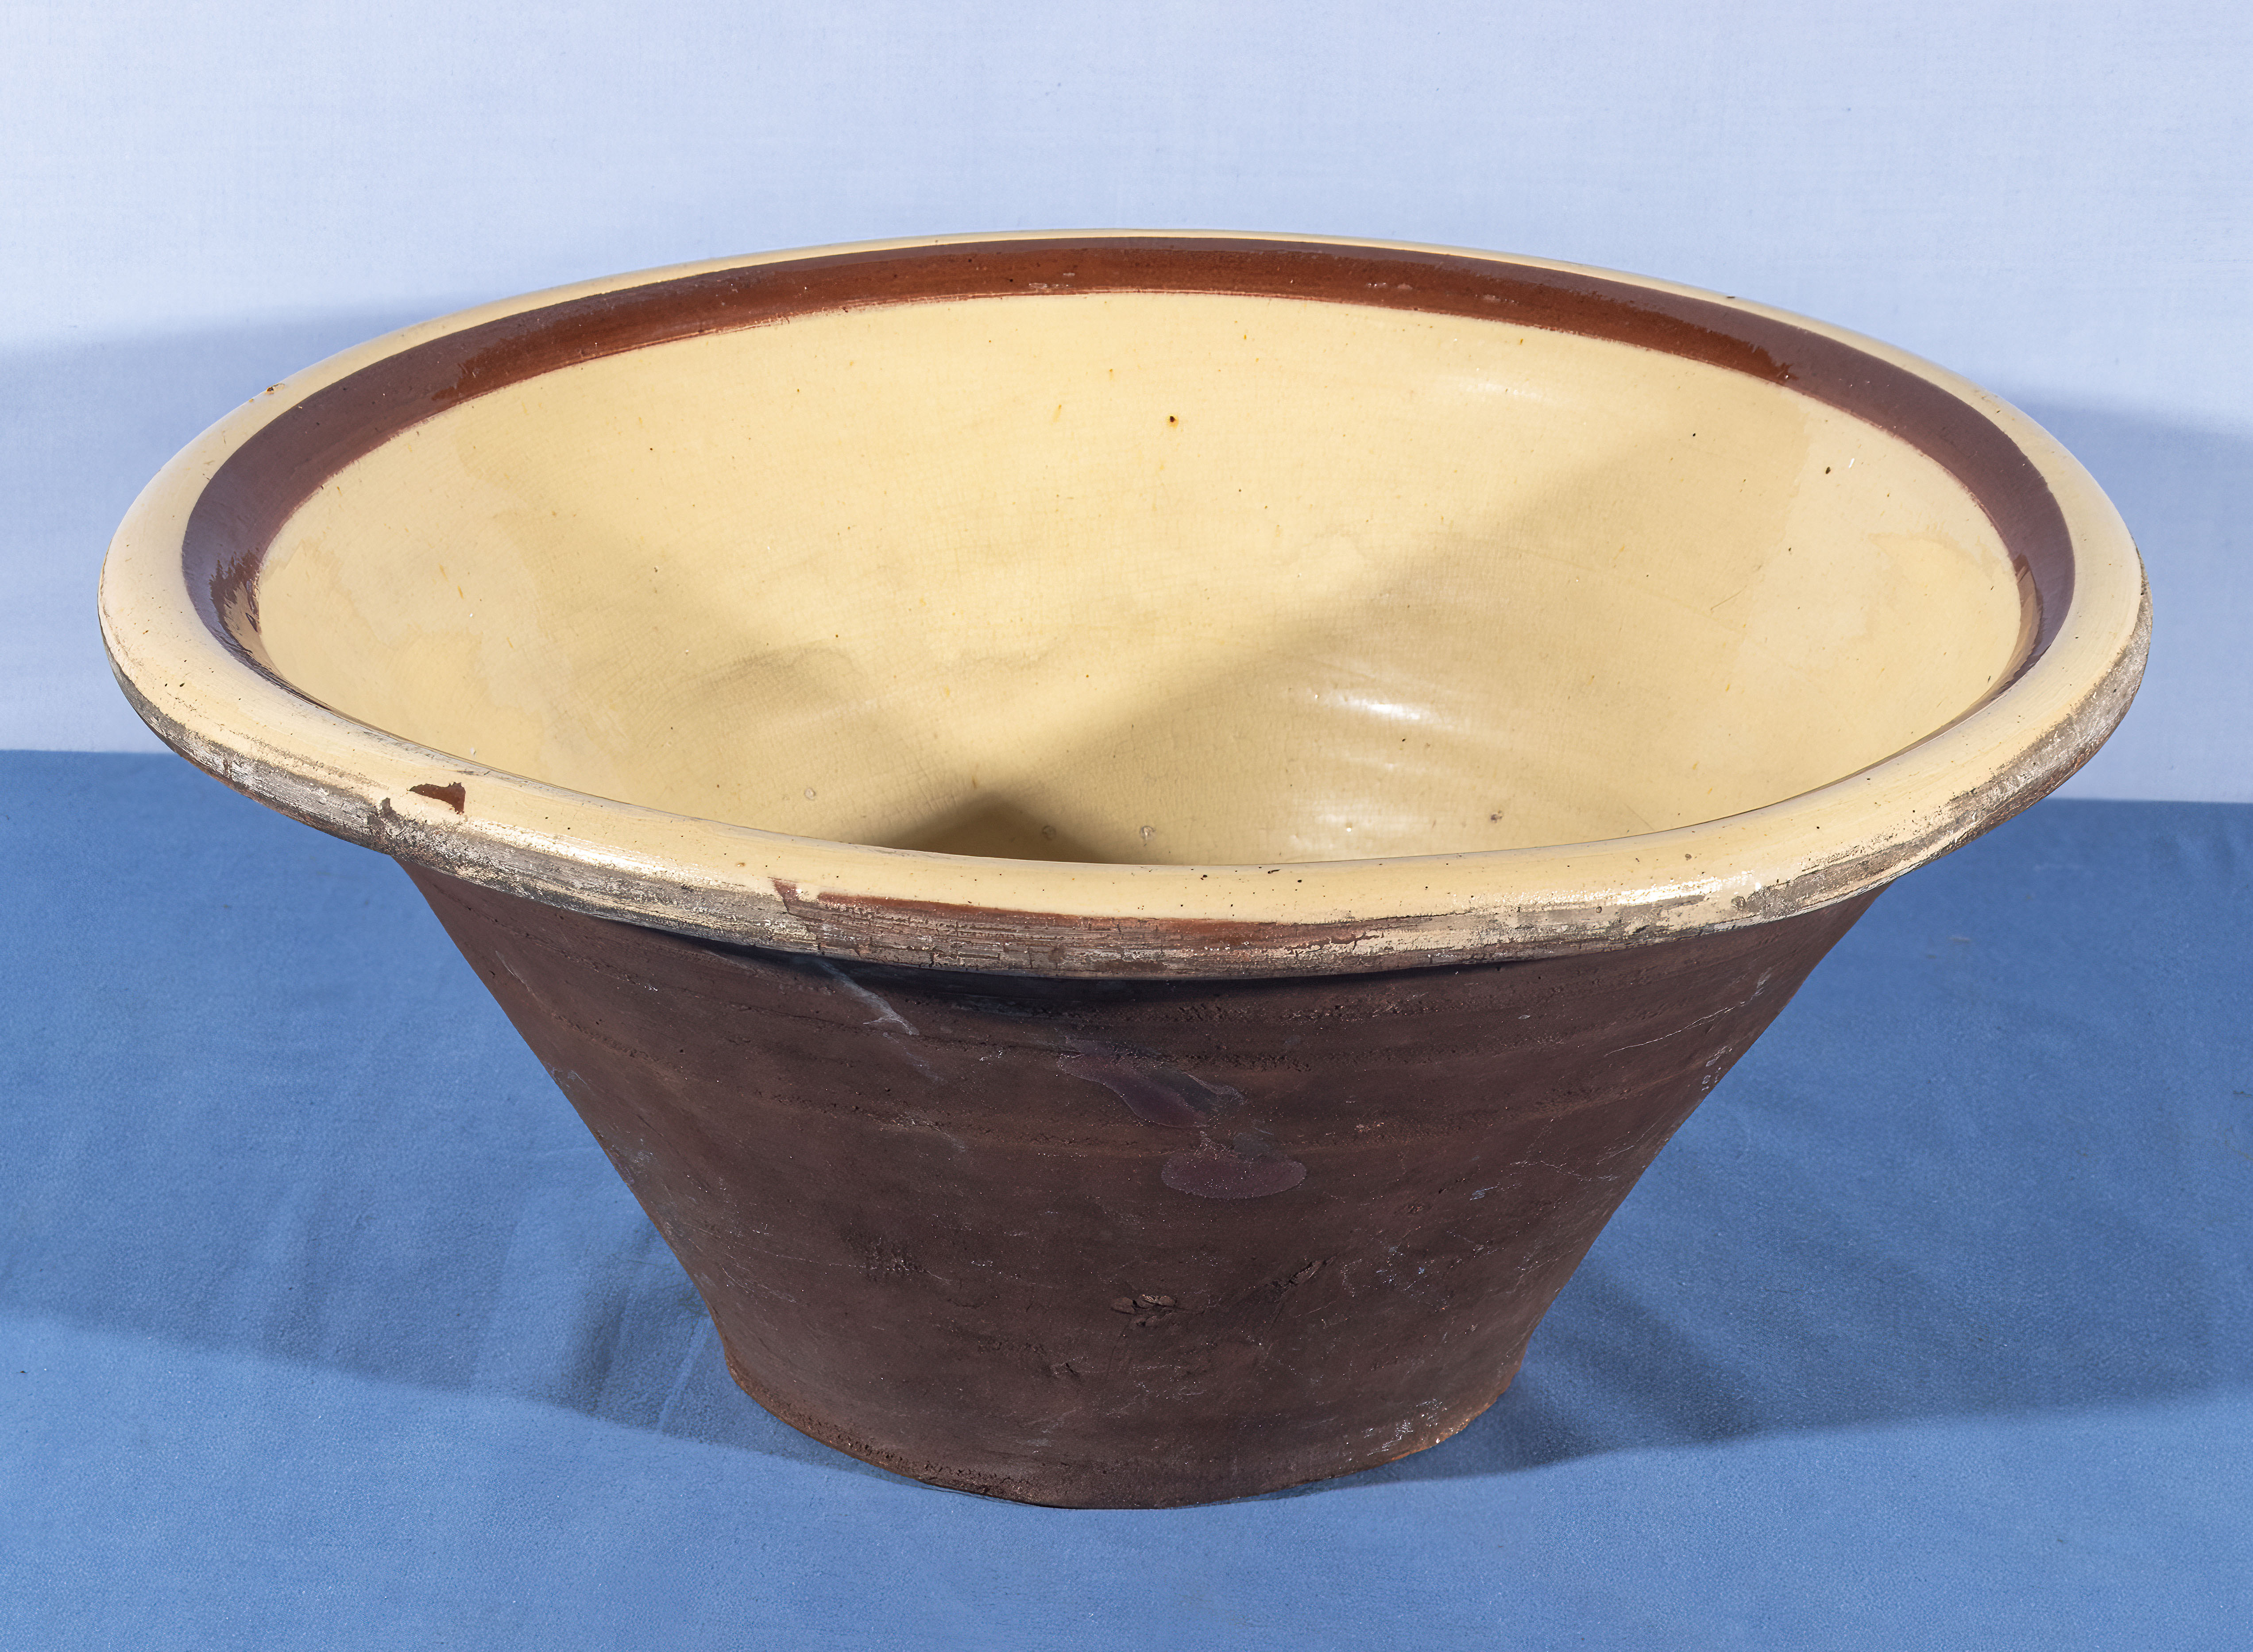 Bread bowl earthenware early 1900